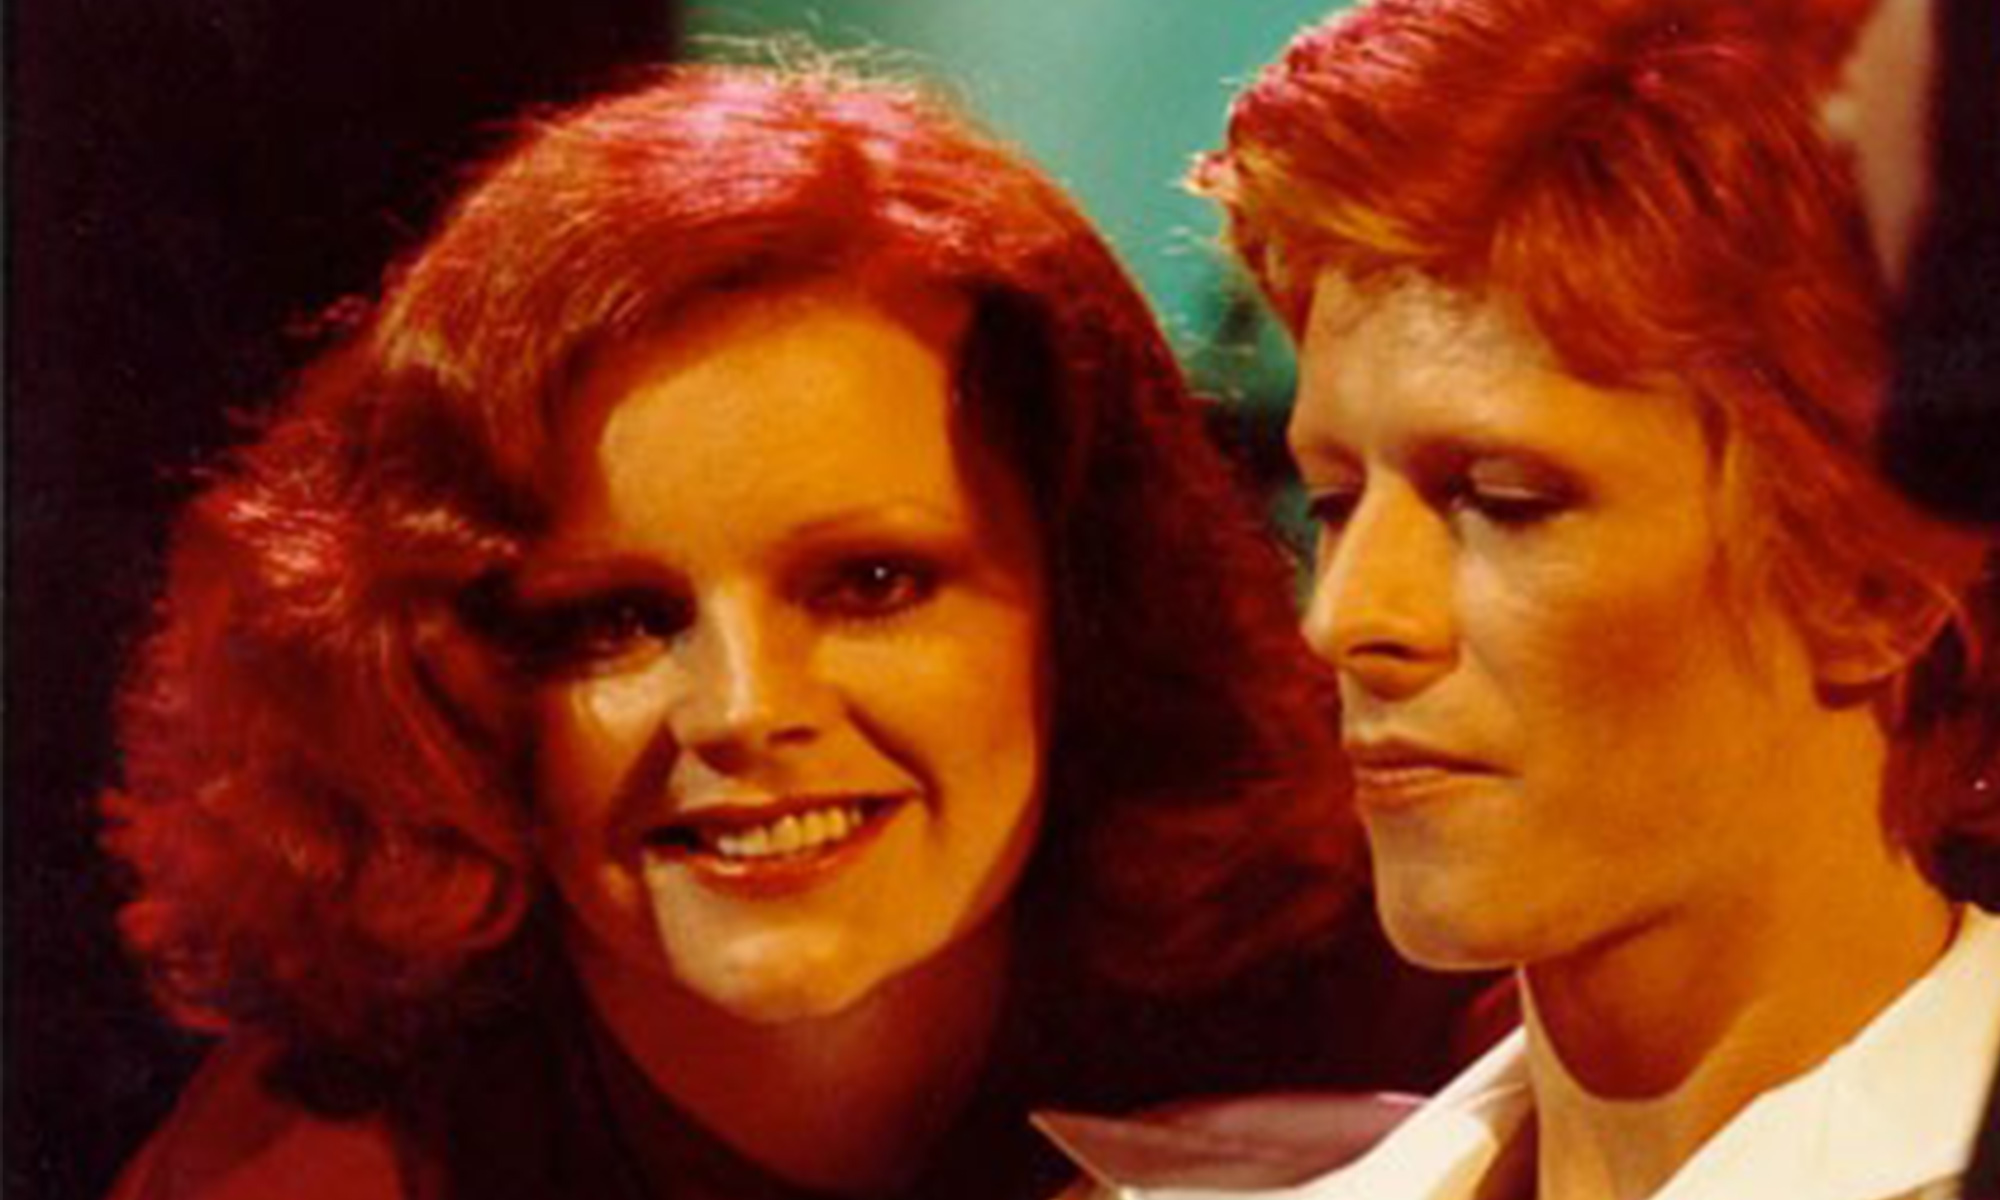 Cherry et David Bowie